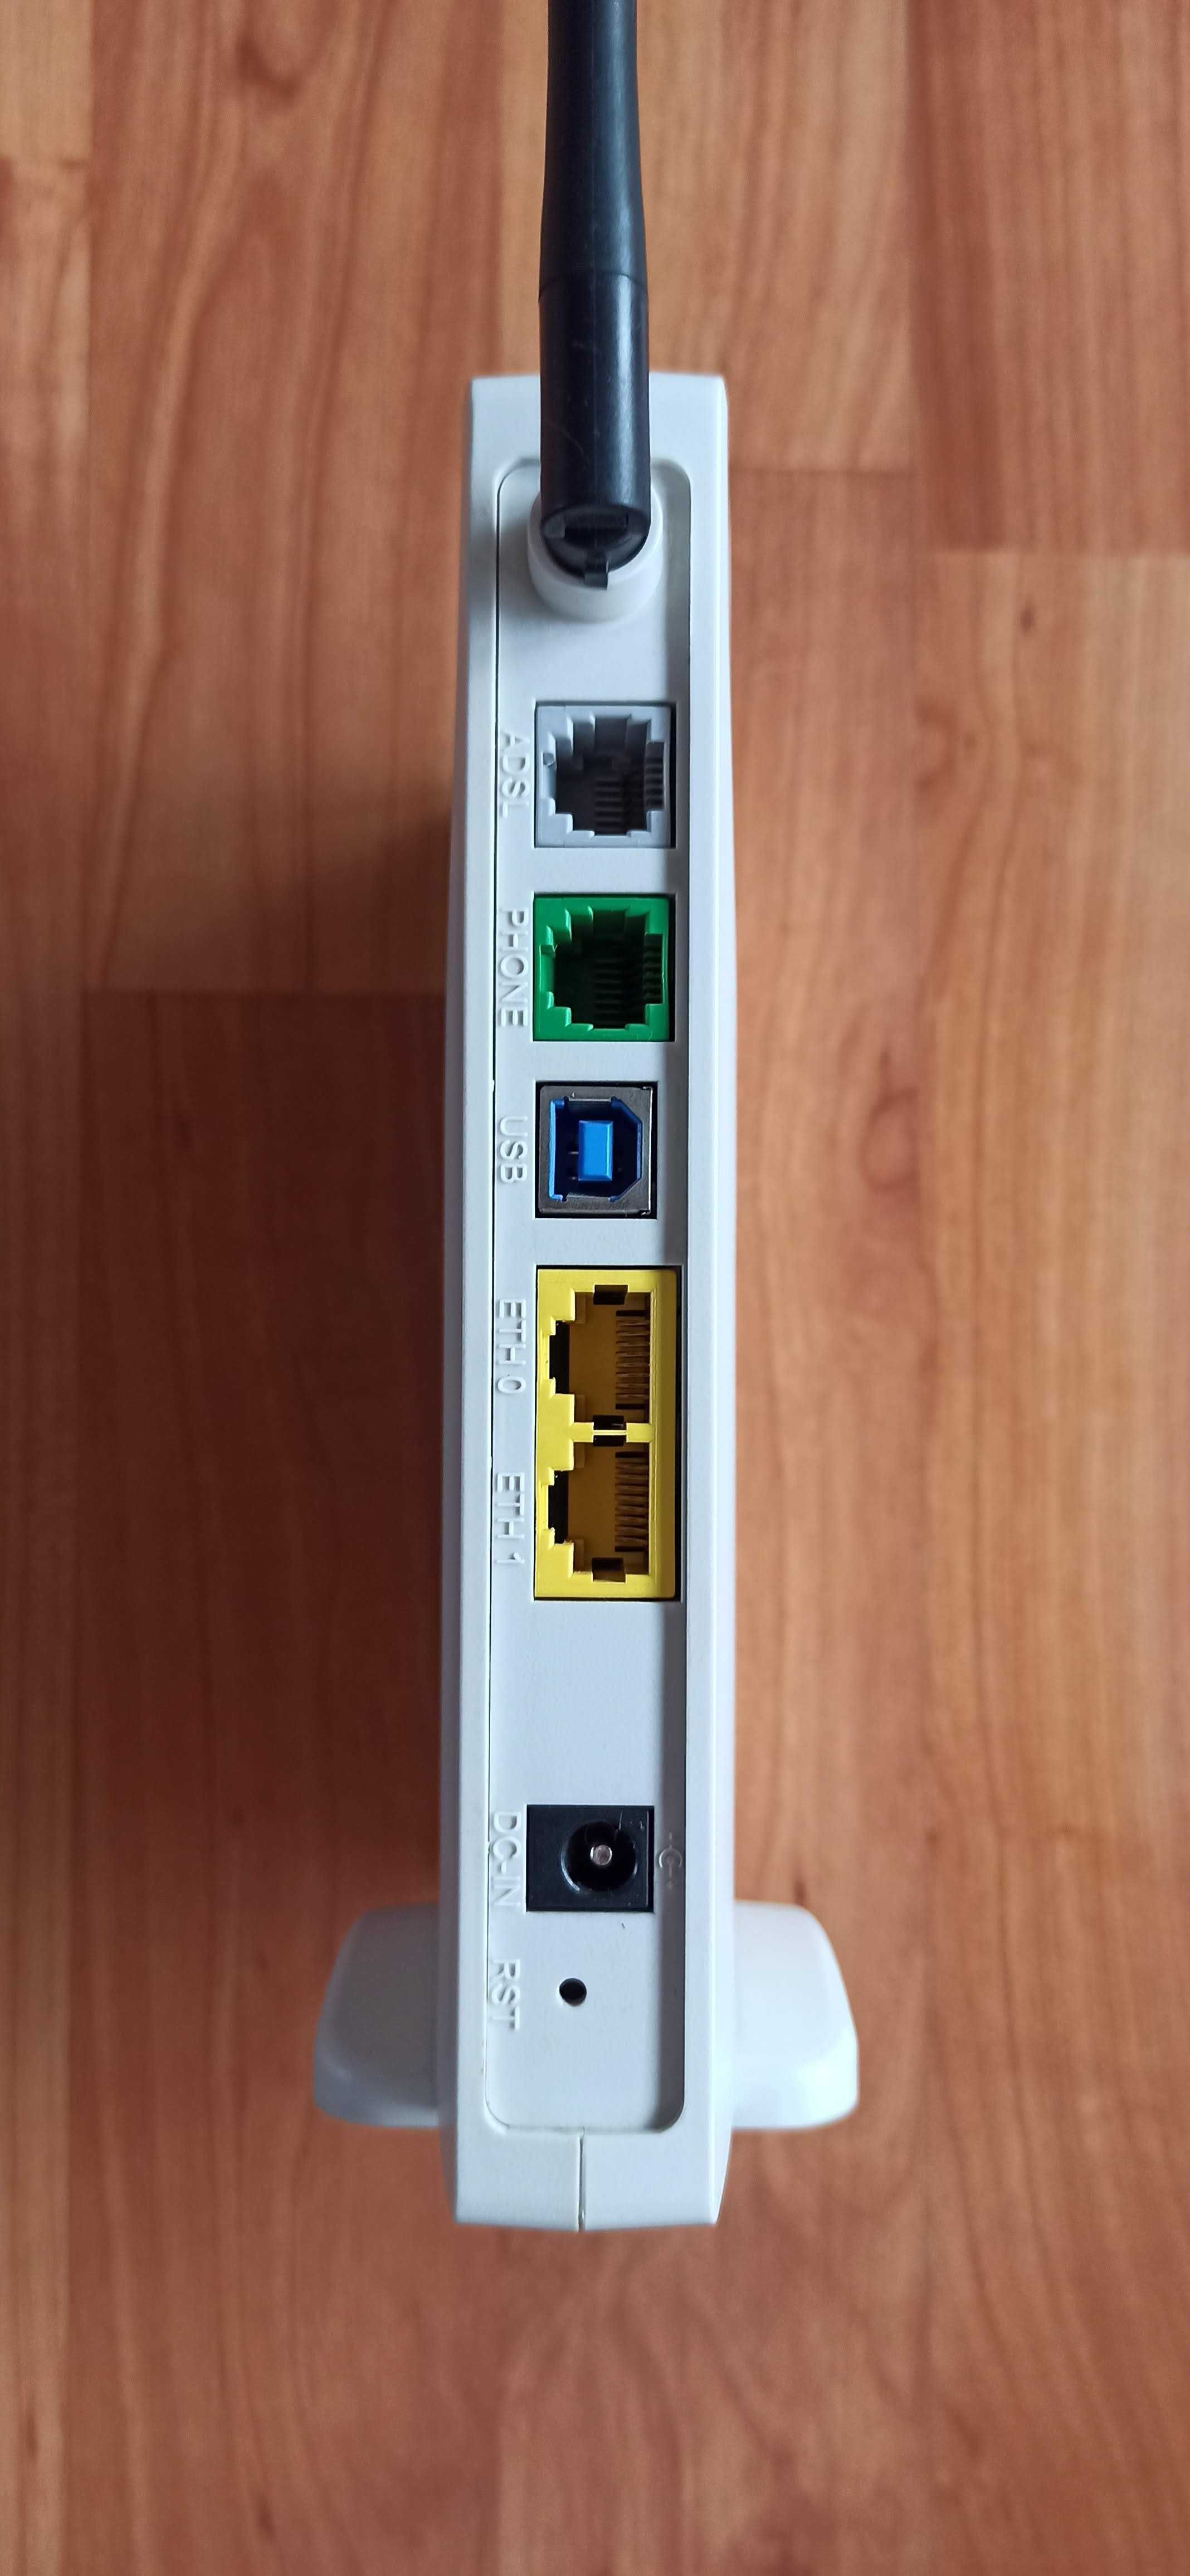 Router Pirelli wi-fi com modem ADSL integrado